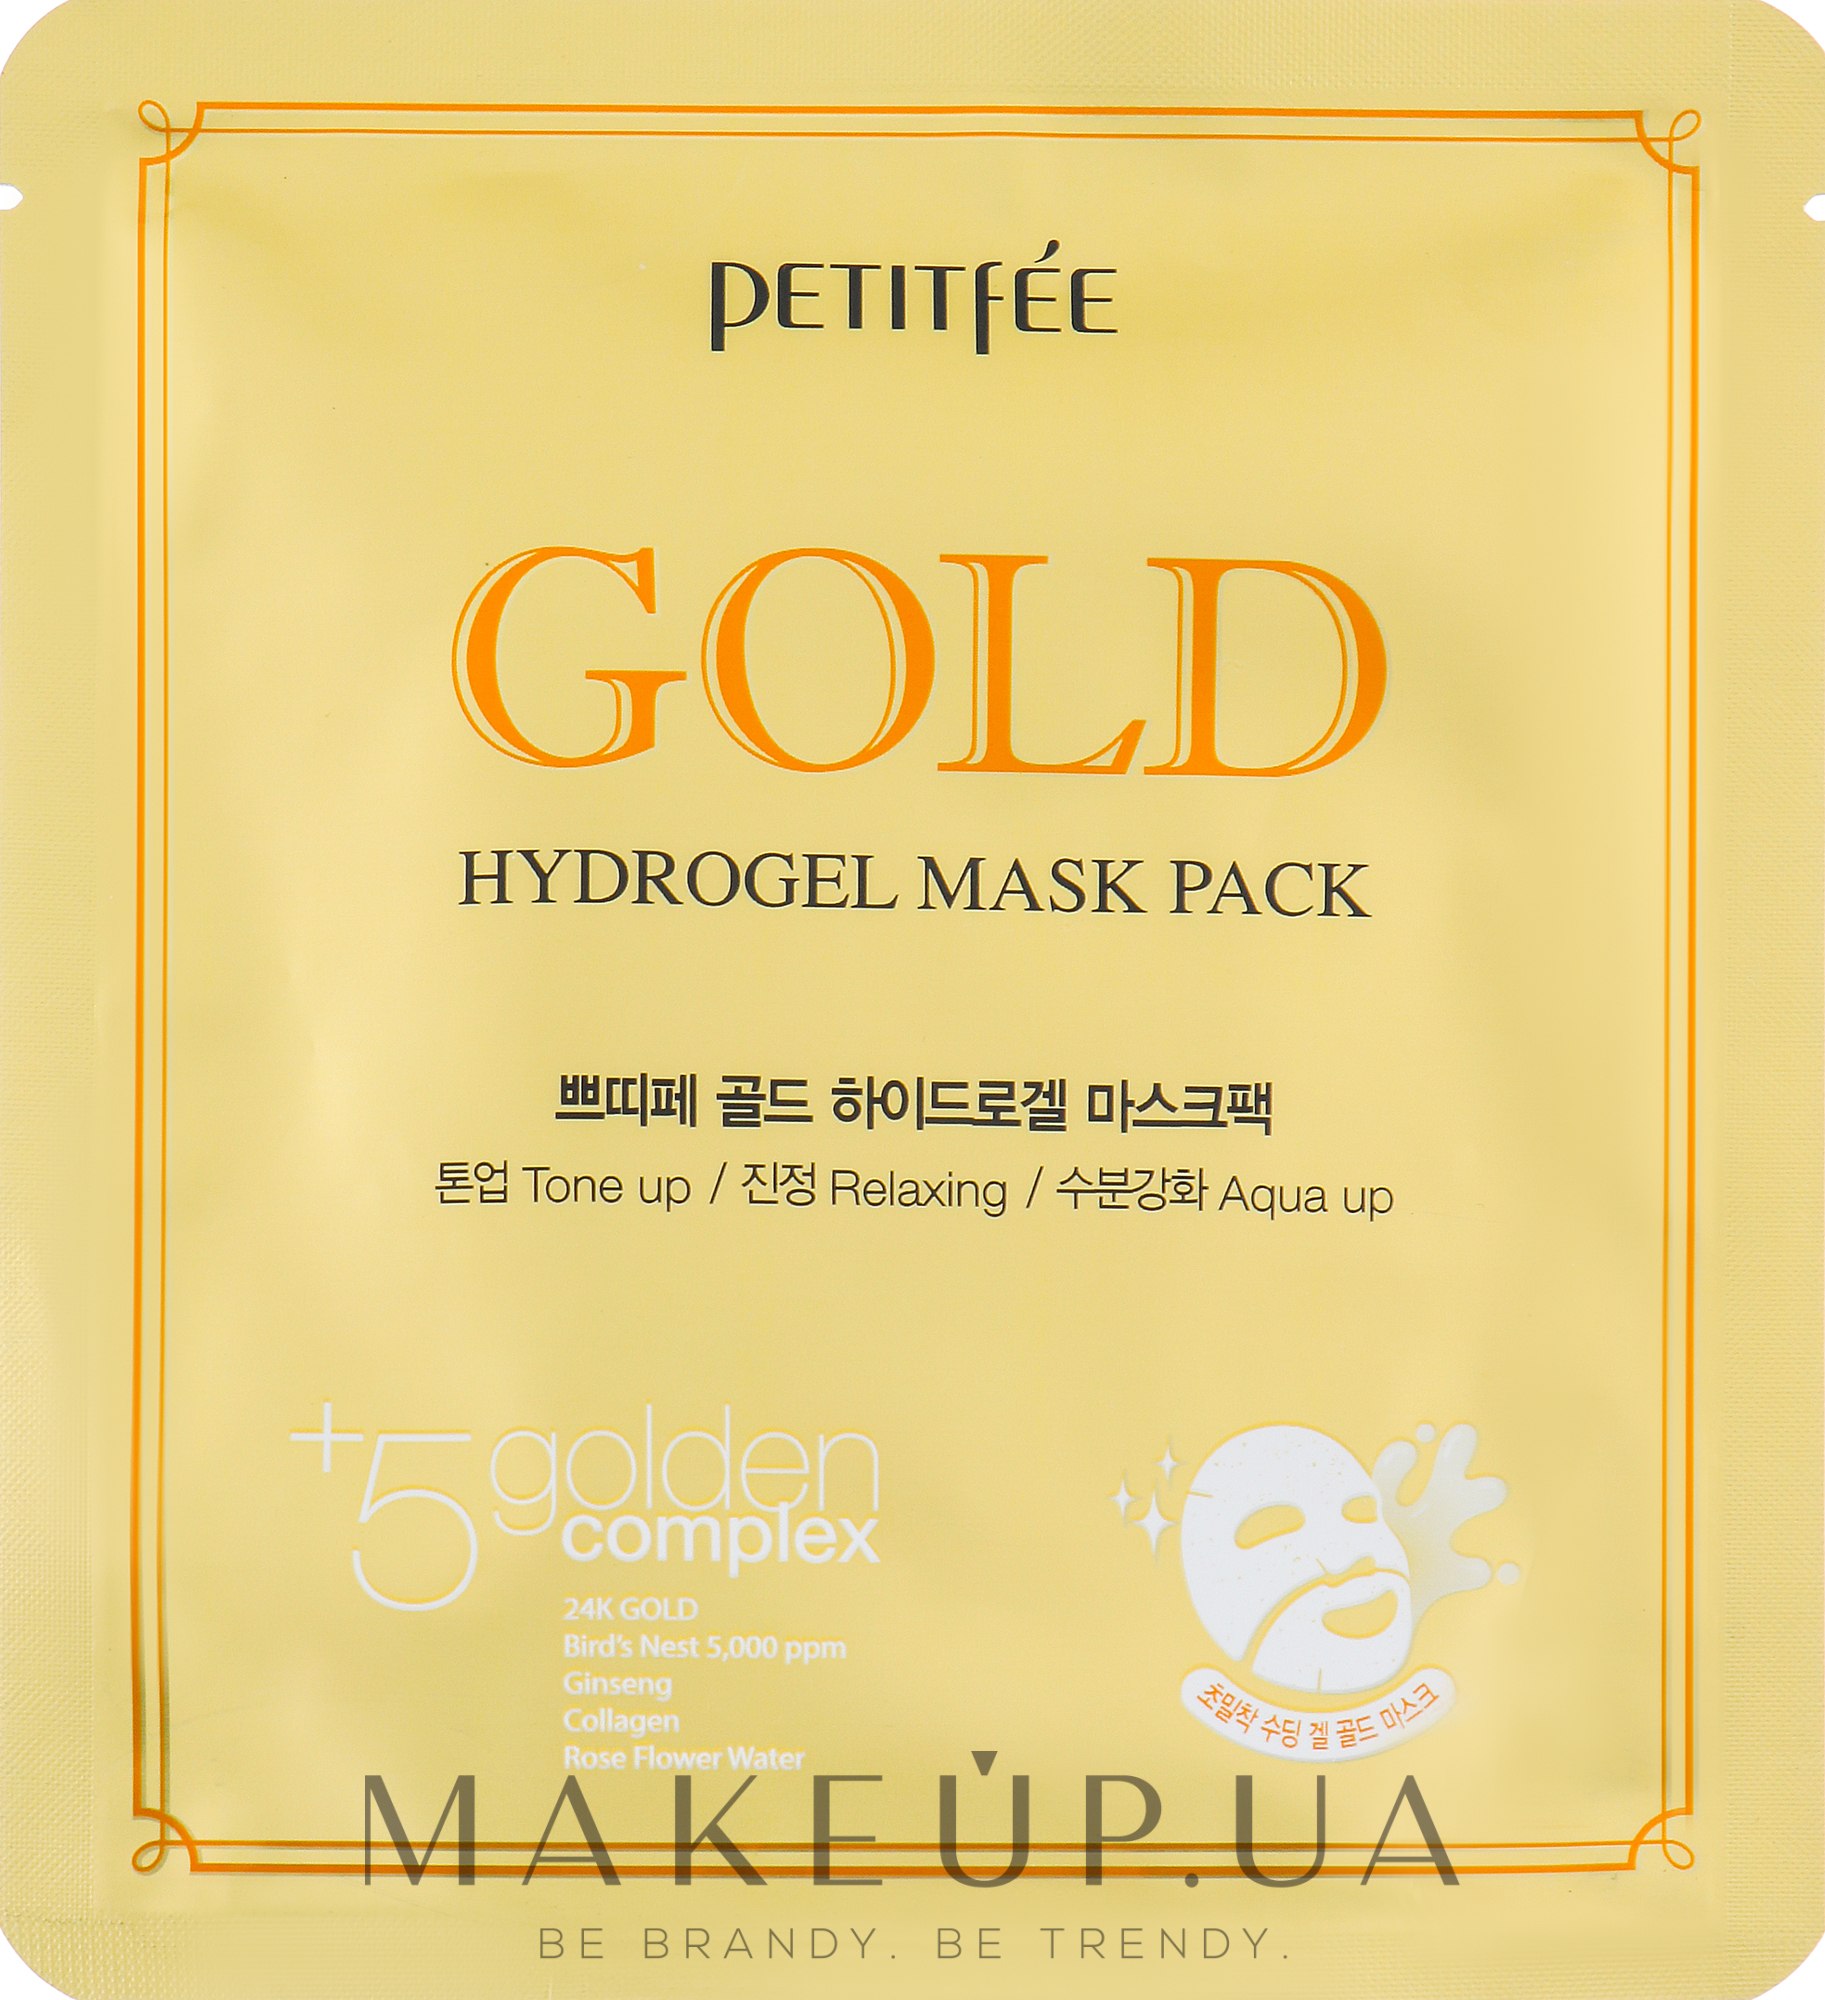 Гидрогелевая маска для лица с золотым комплексом +5 - Petitfee & Koelf Gold Hydrogel Mask Pack +5 golden complex — фото 1шт